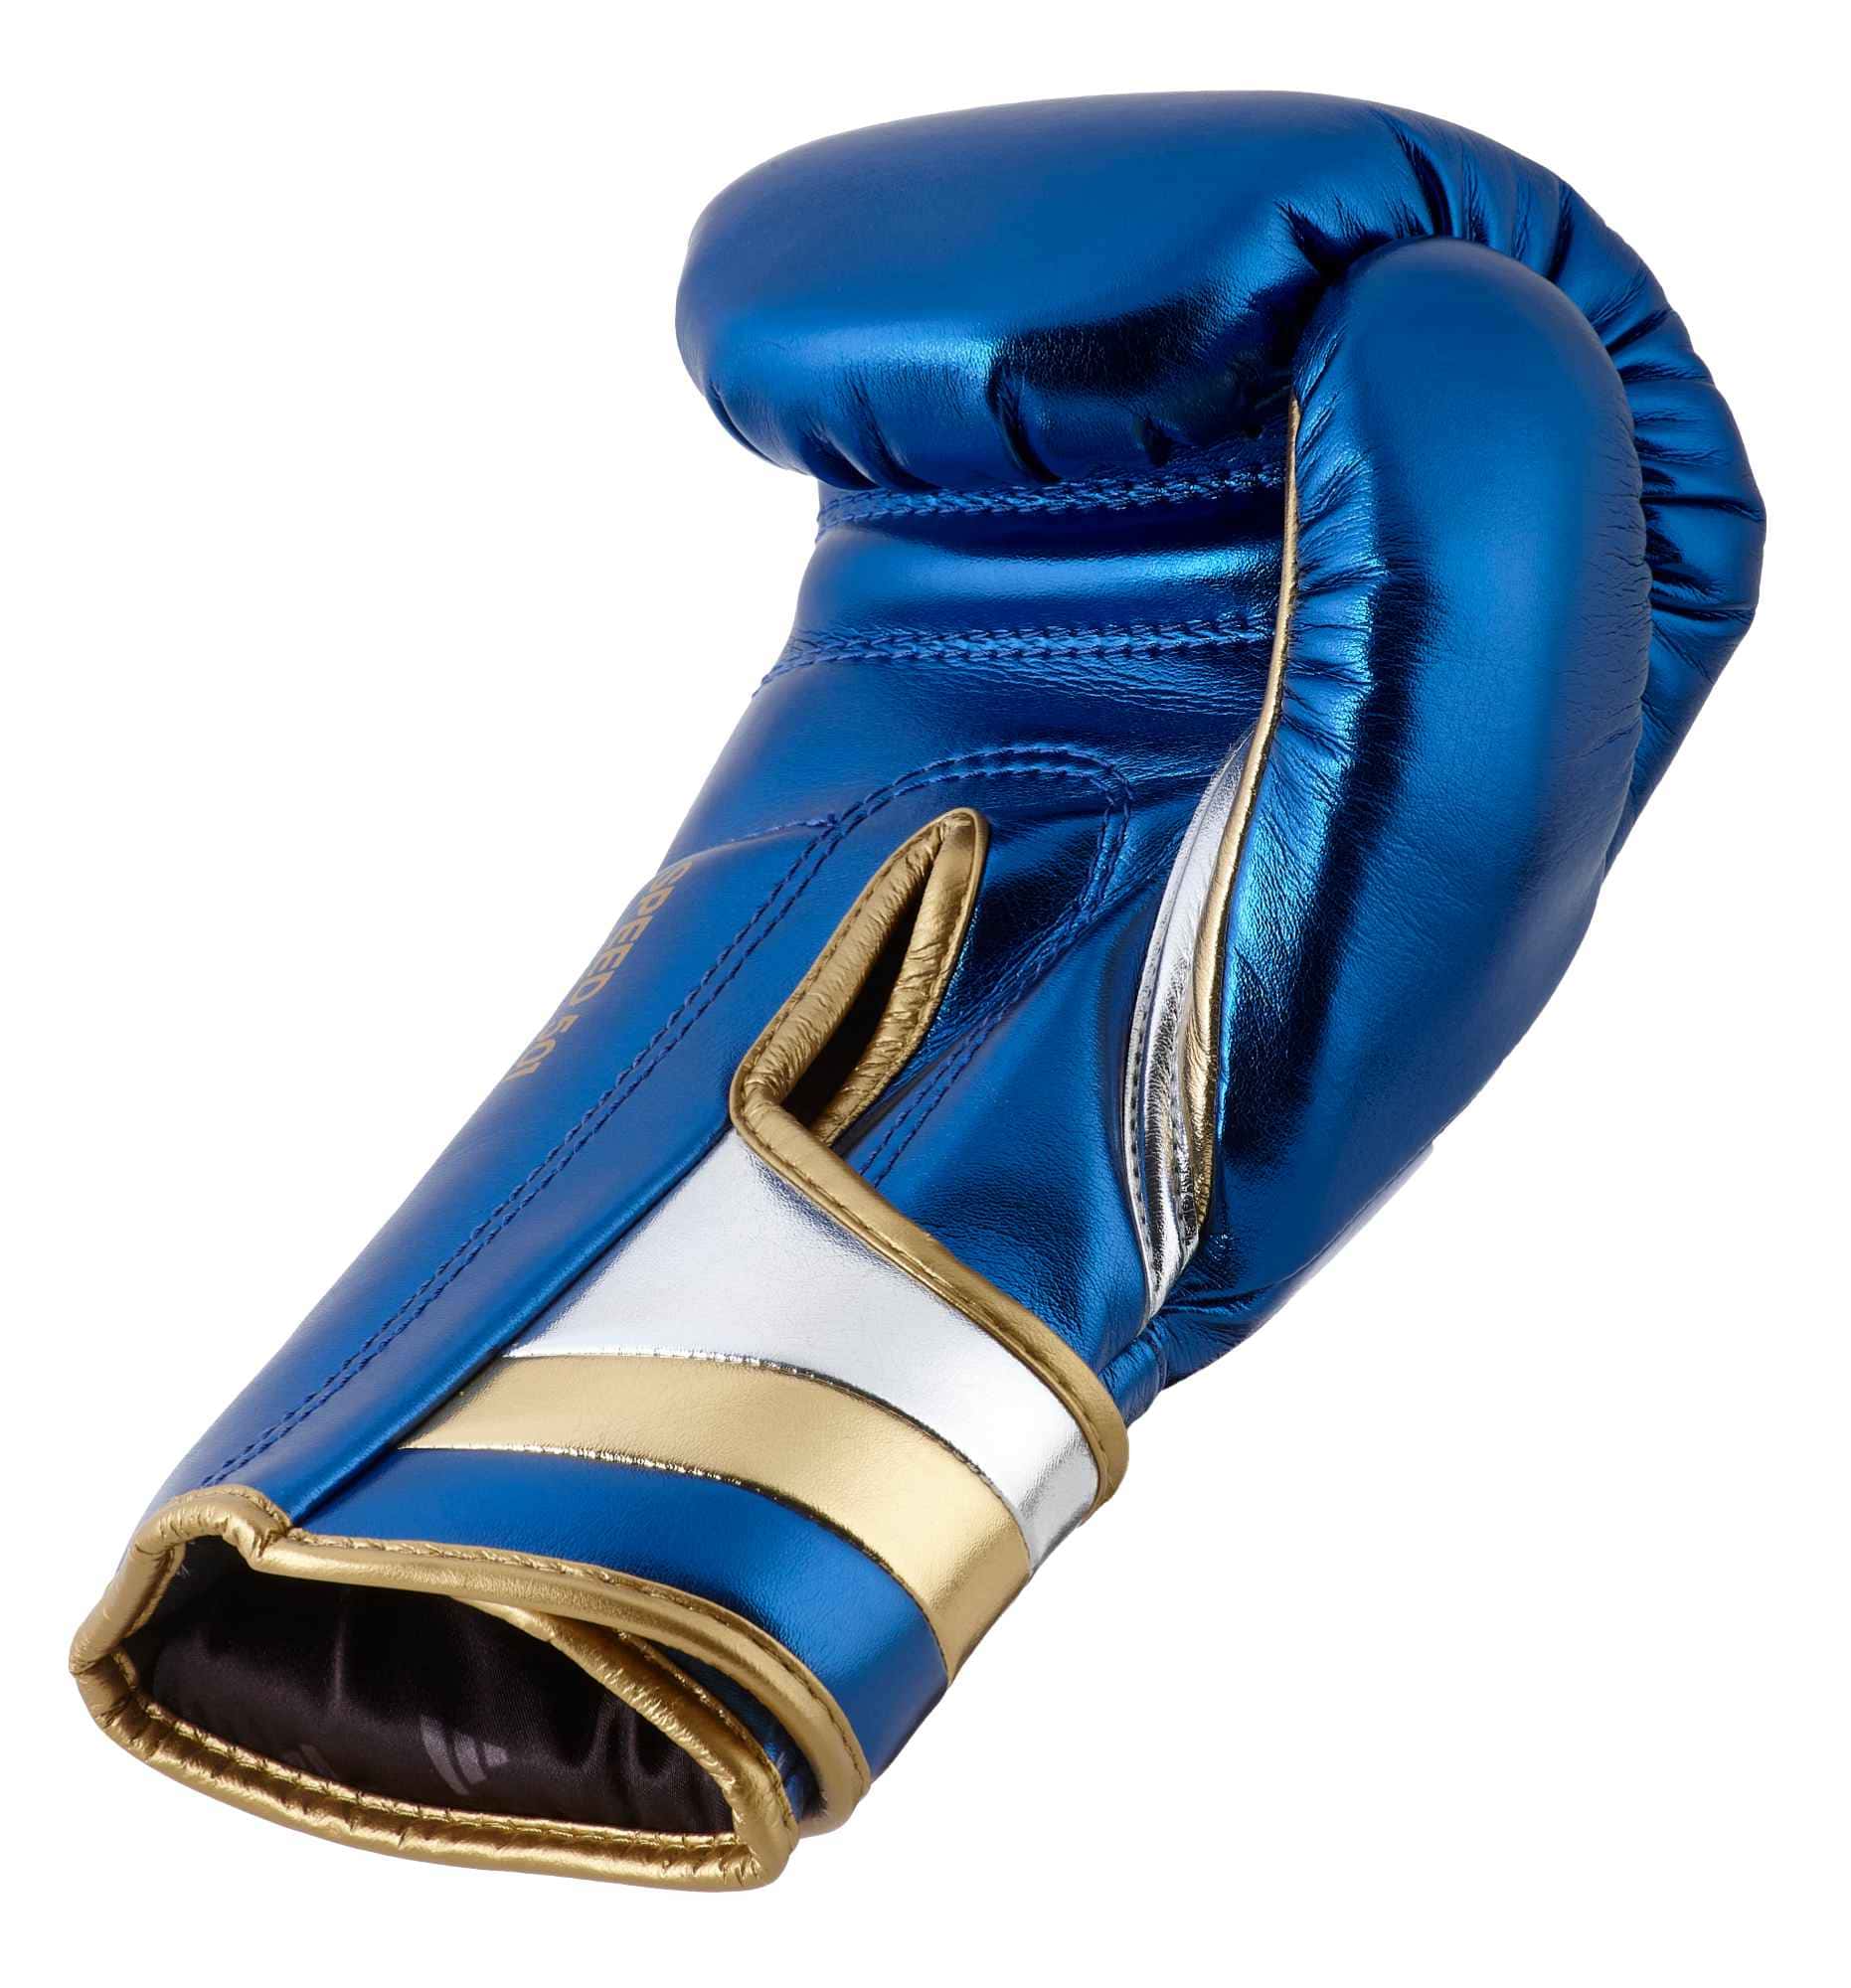 Adidas Boxhandschuhe SPEED 500 Blau/Gold Online kaufen ✓ | EMPAROR